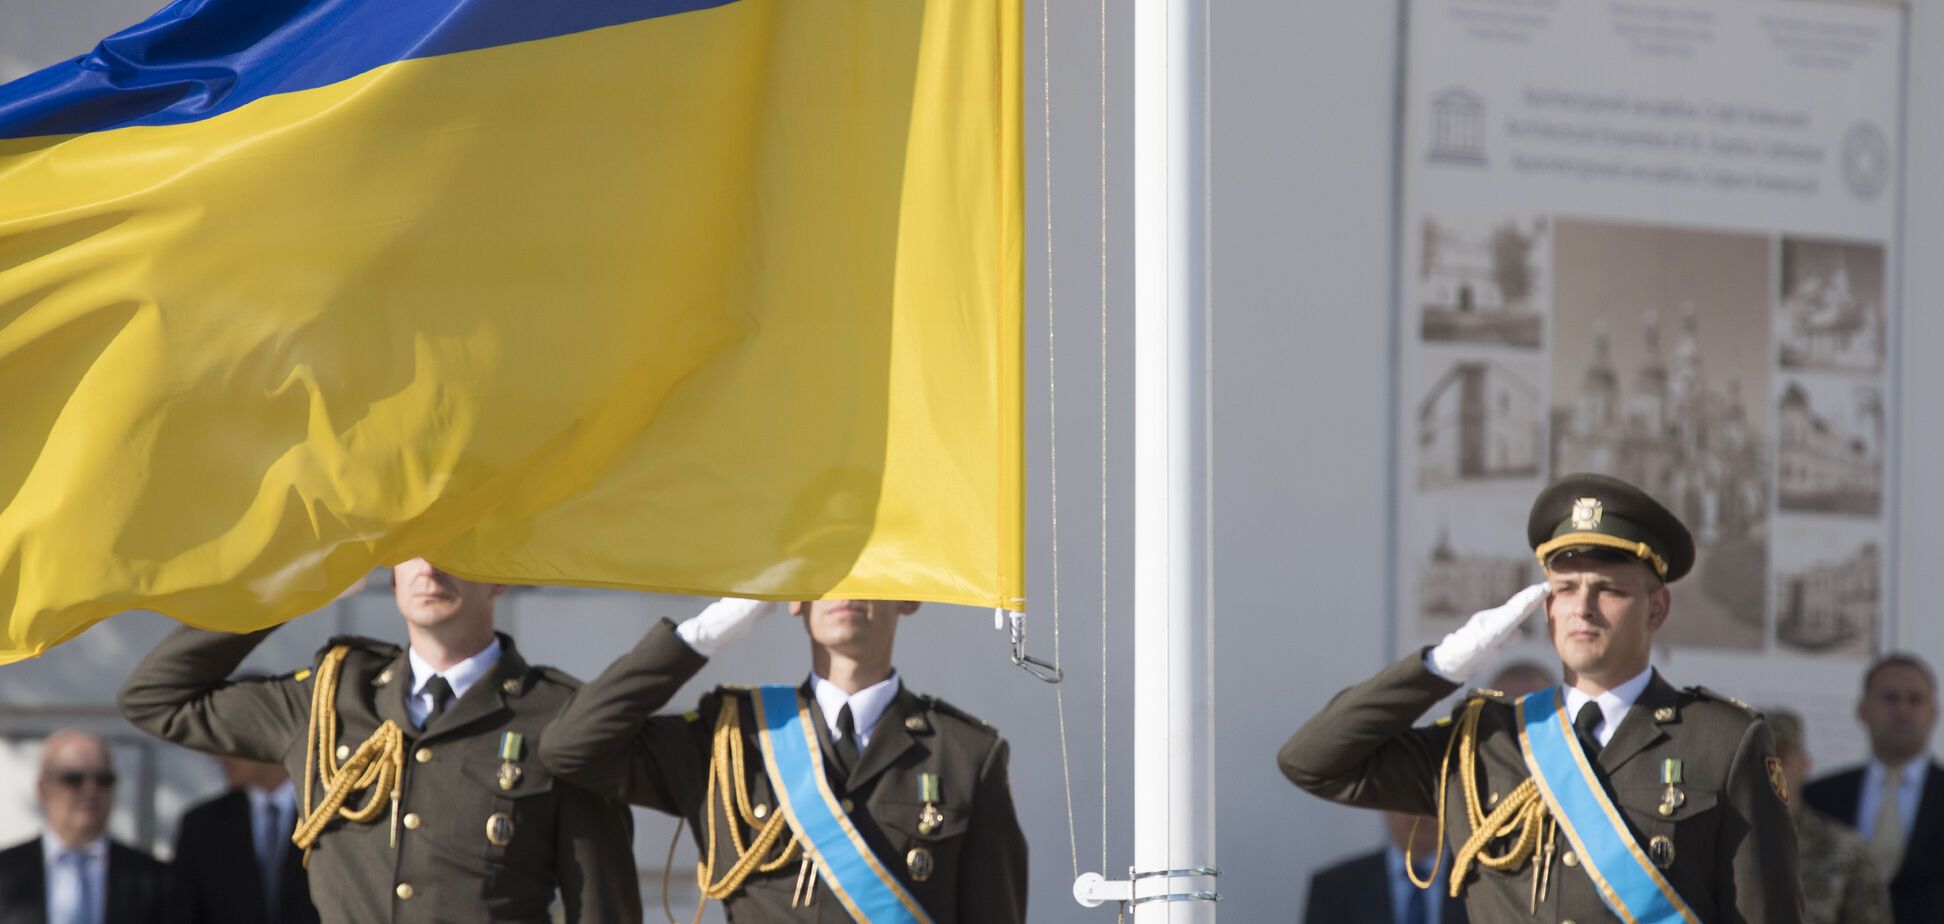 Поки Донбас згасає: стало відомо про формування нового локомотива економіки України